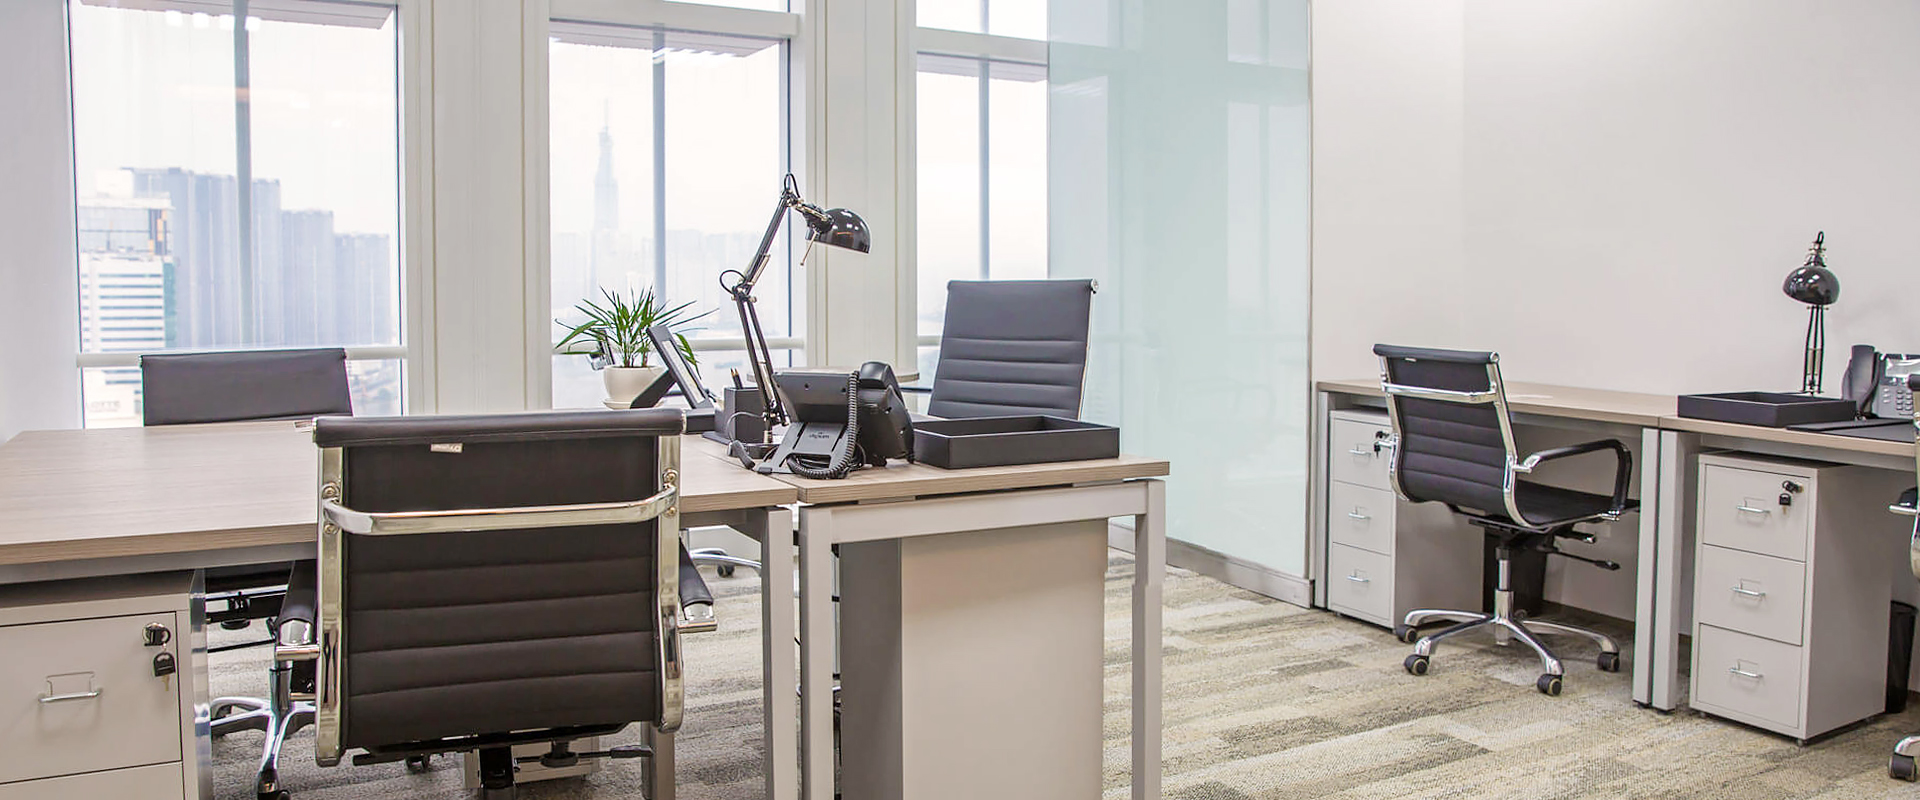 Văn phòng trọn gói Vietcombank Ceo Suite với thiết kế sang trọng đầy đủ nội thất cao cấp